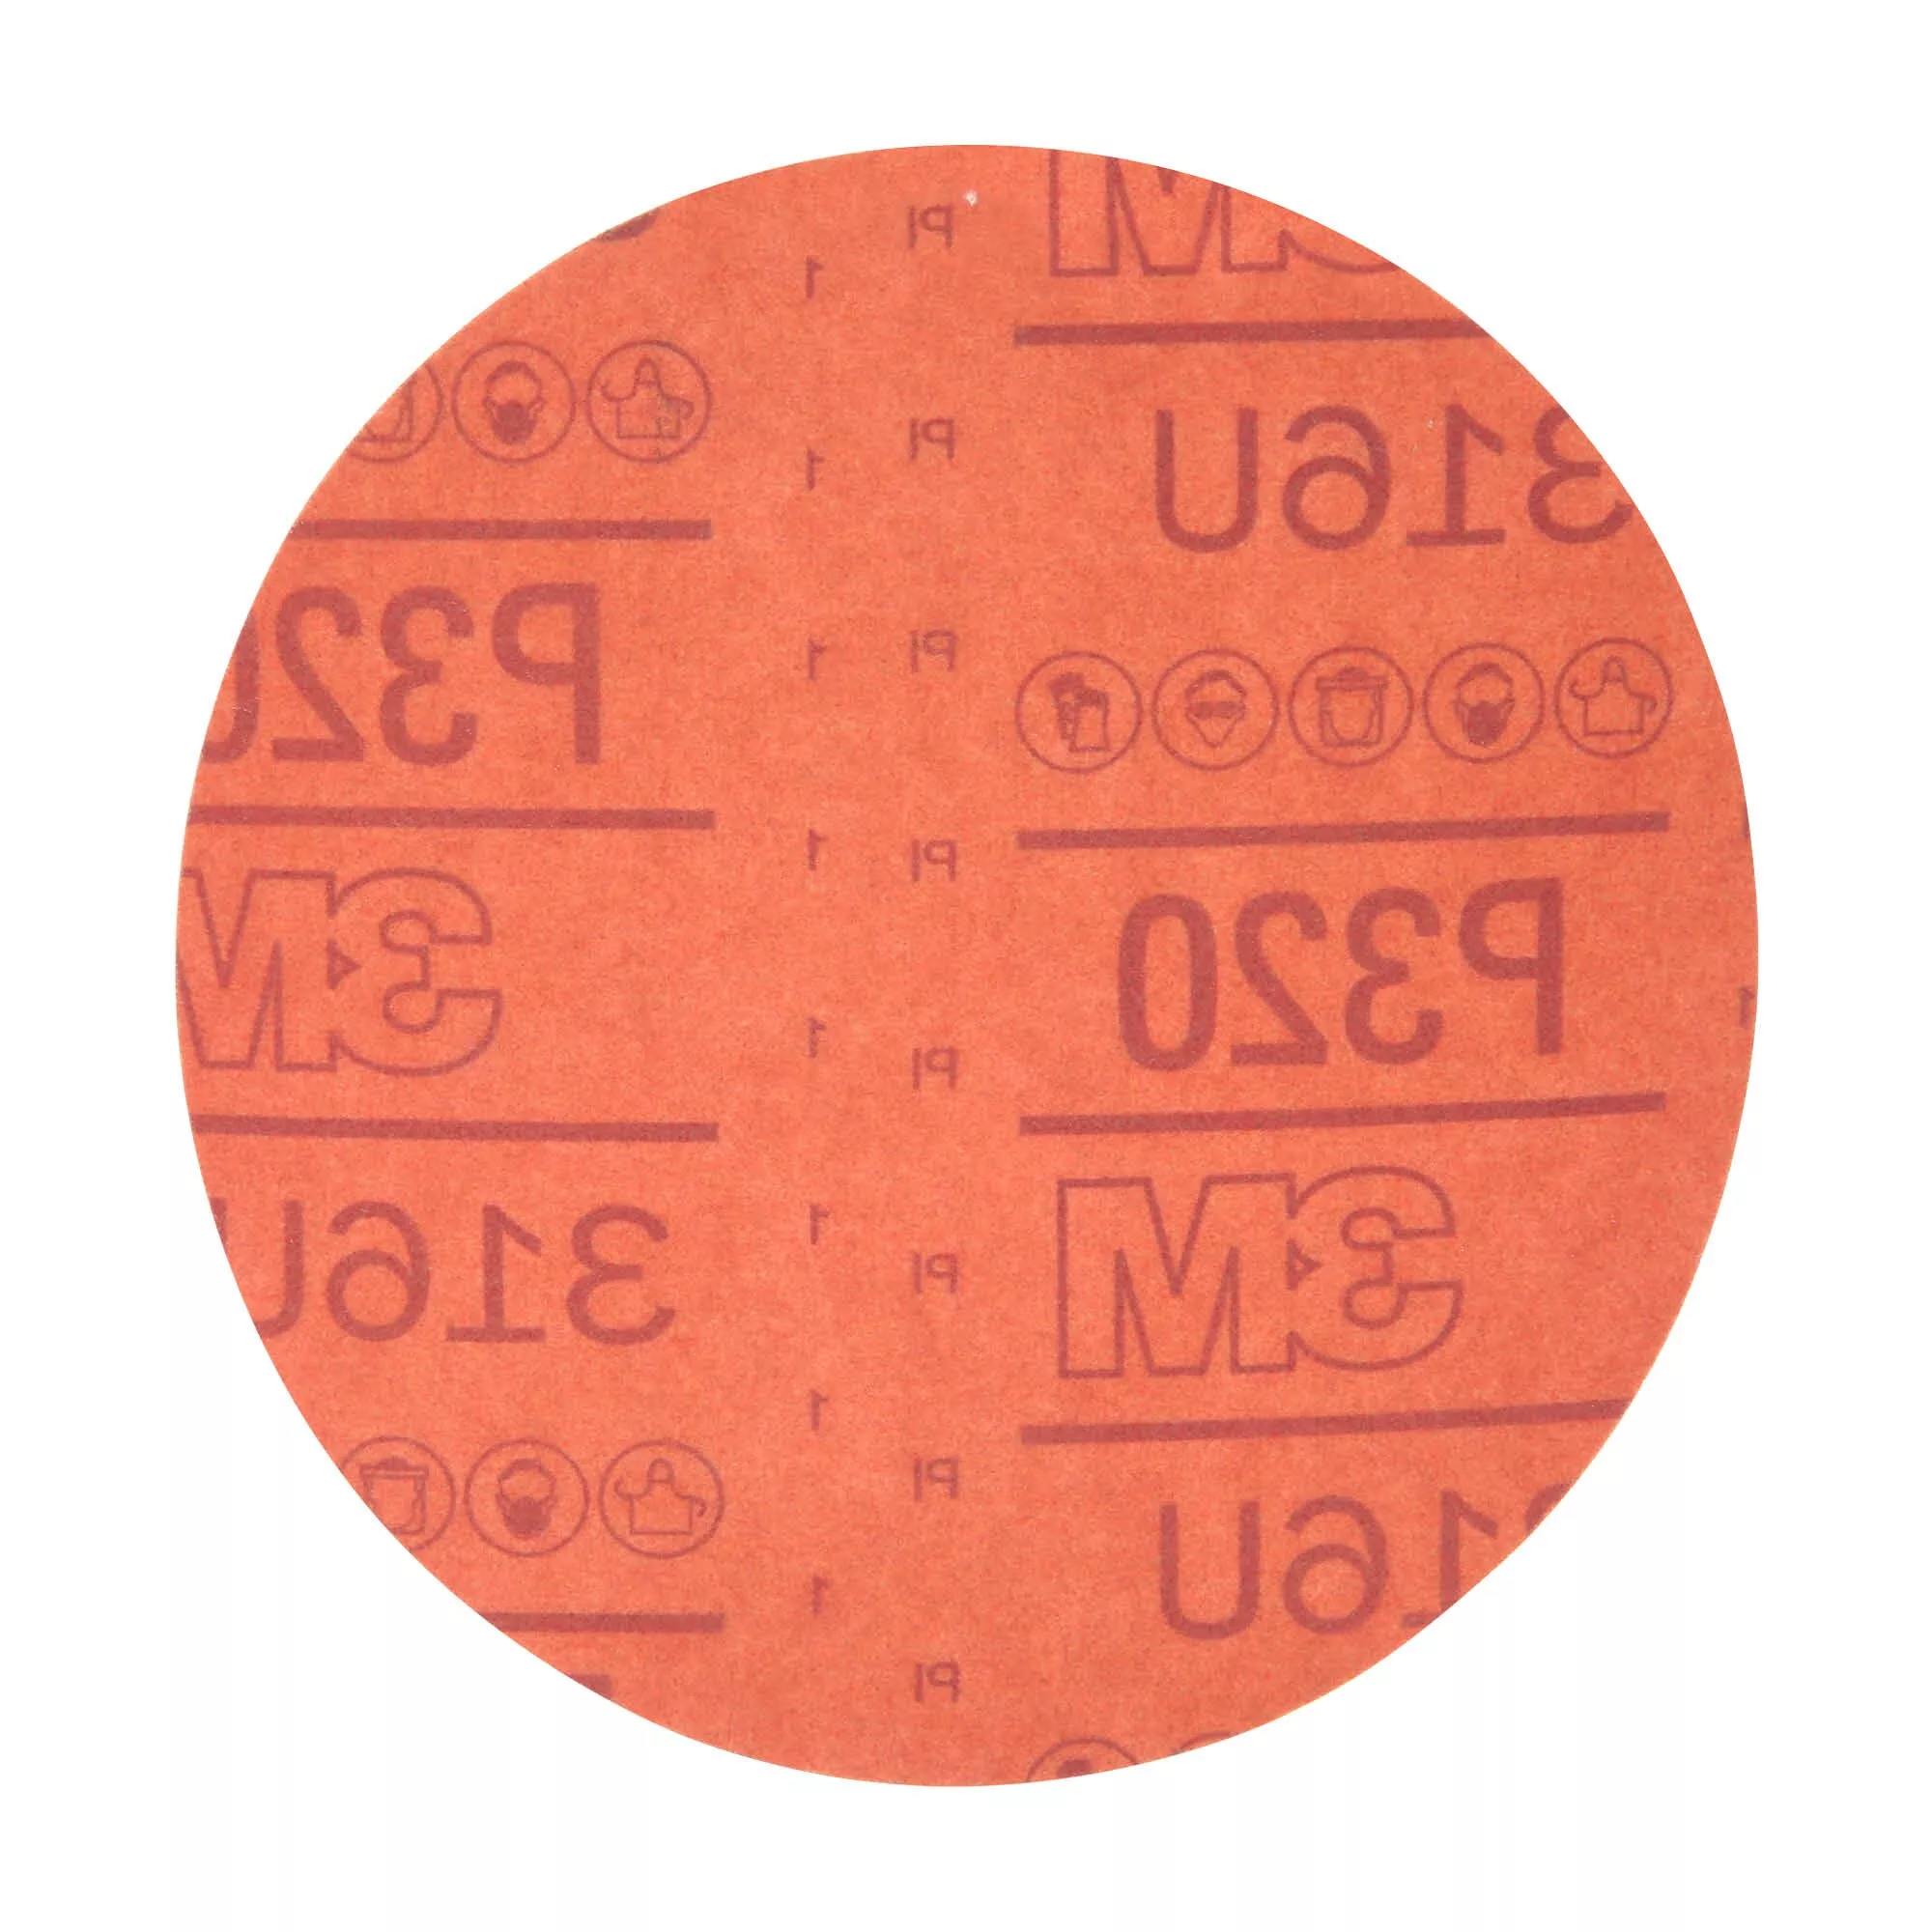 SKU 7000119782 | 3M™ Hookit™ Red Abrasive Disc